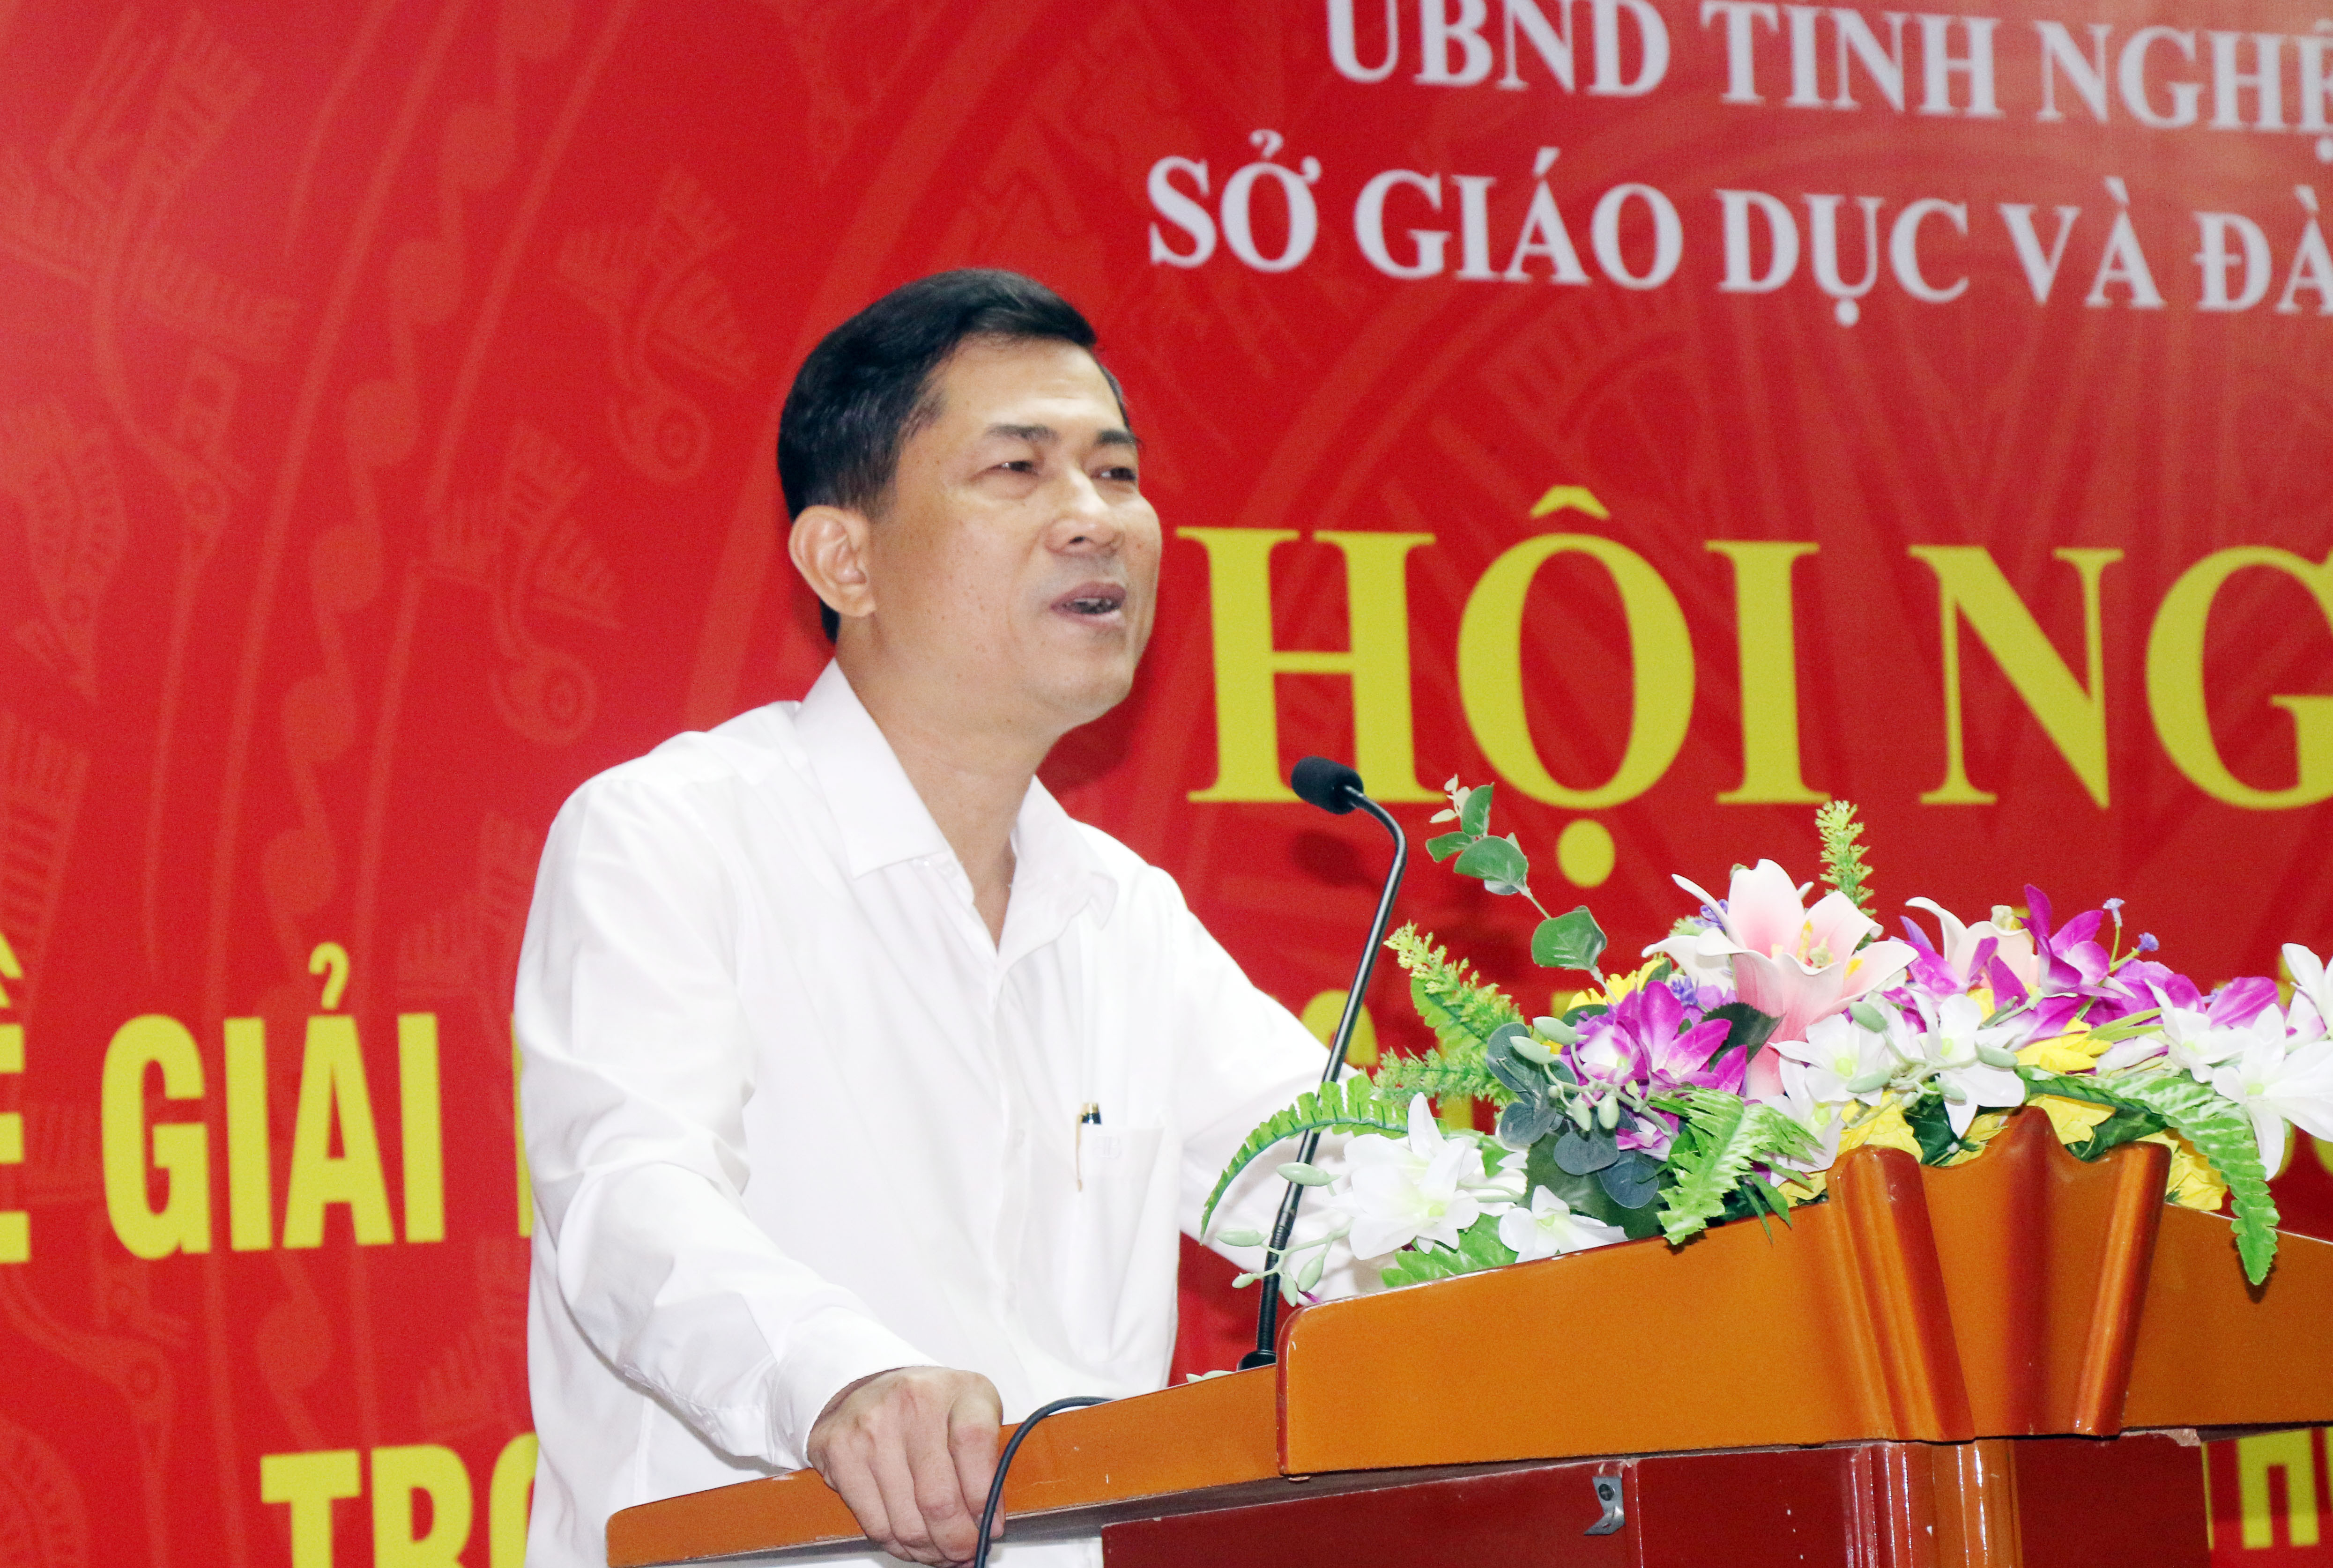 Giám đốc Sở Giáo dục và Đào tạo Thái Văn Thành phát biểu tại hội nghị. Ảnh: Mỹ Hà.